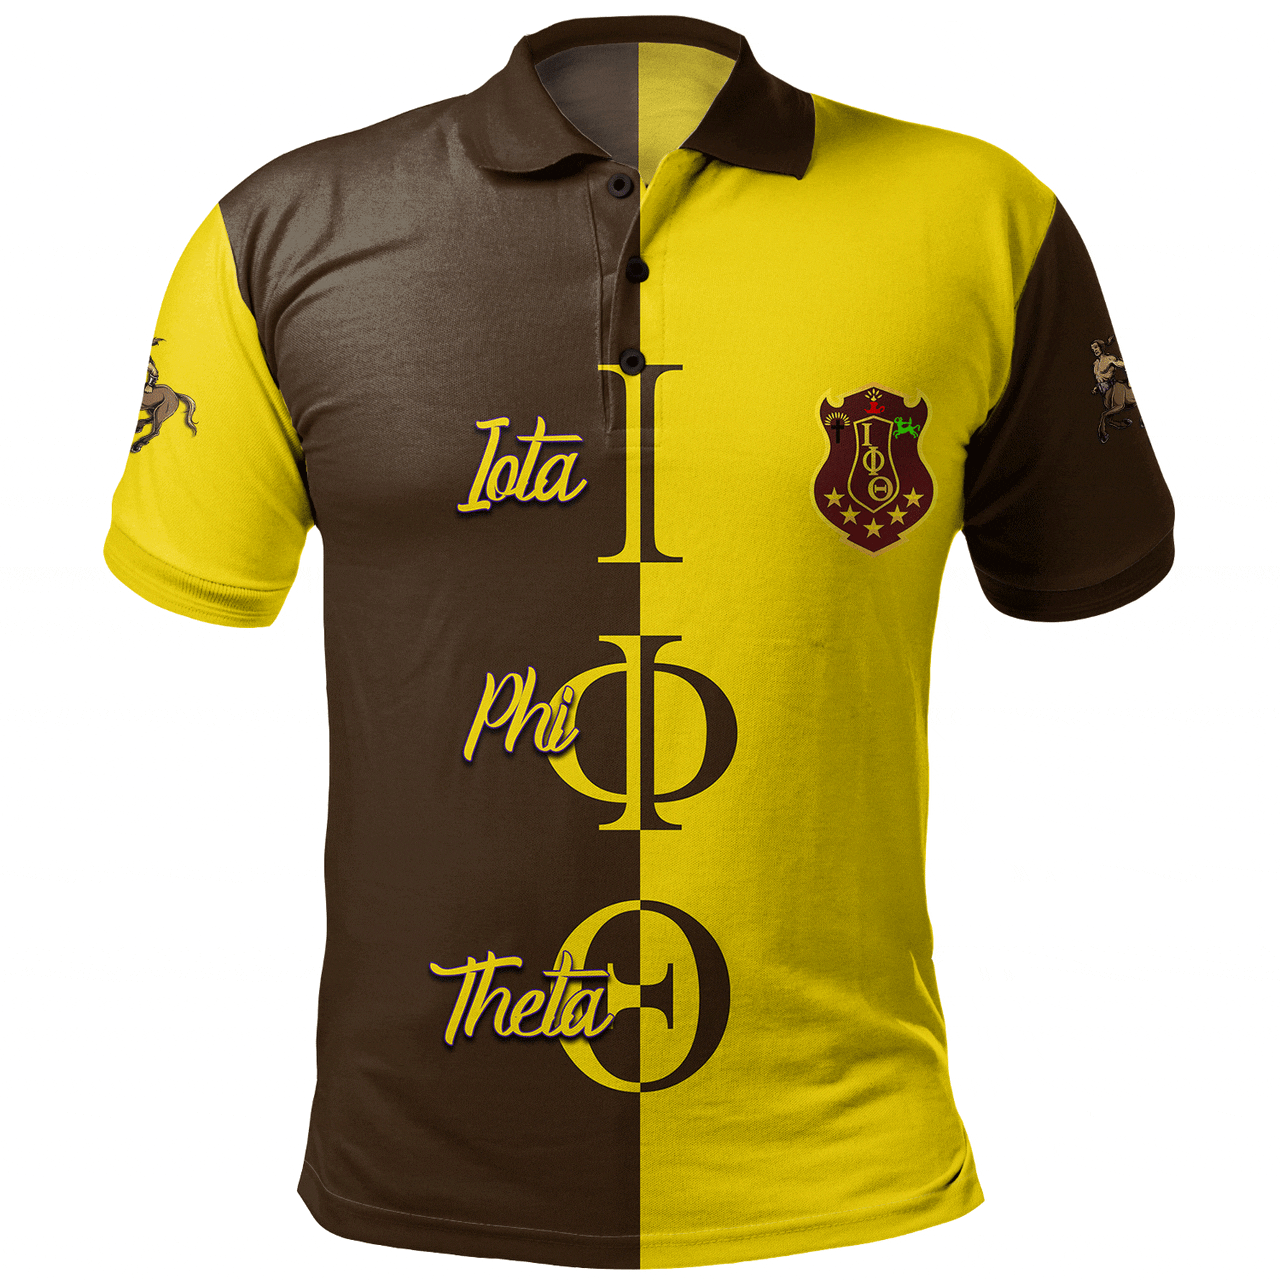 Iota Phi Theta Polo Shirt Half Style